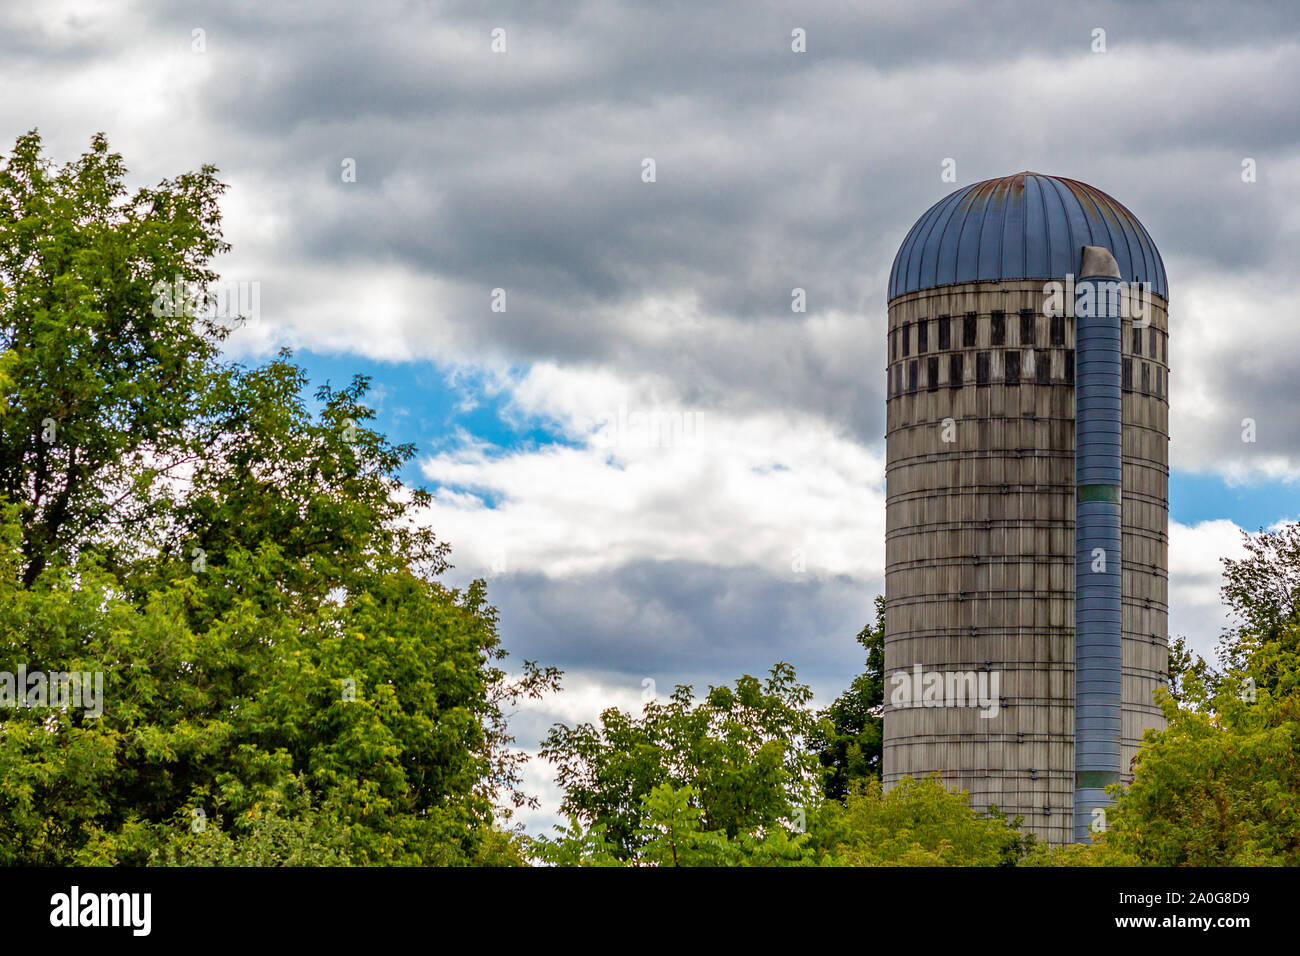 Un silo del grano si erge contro un cielo nuvoloso, con alberi intorno ad esso. Questo cemento silo della doga è utilizzato per la conservazione di alimenti di origine animale. Foto Stock